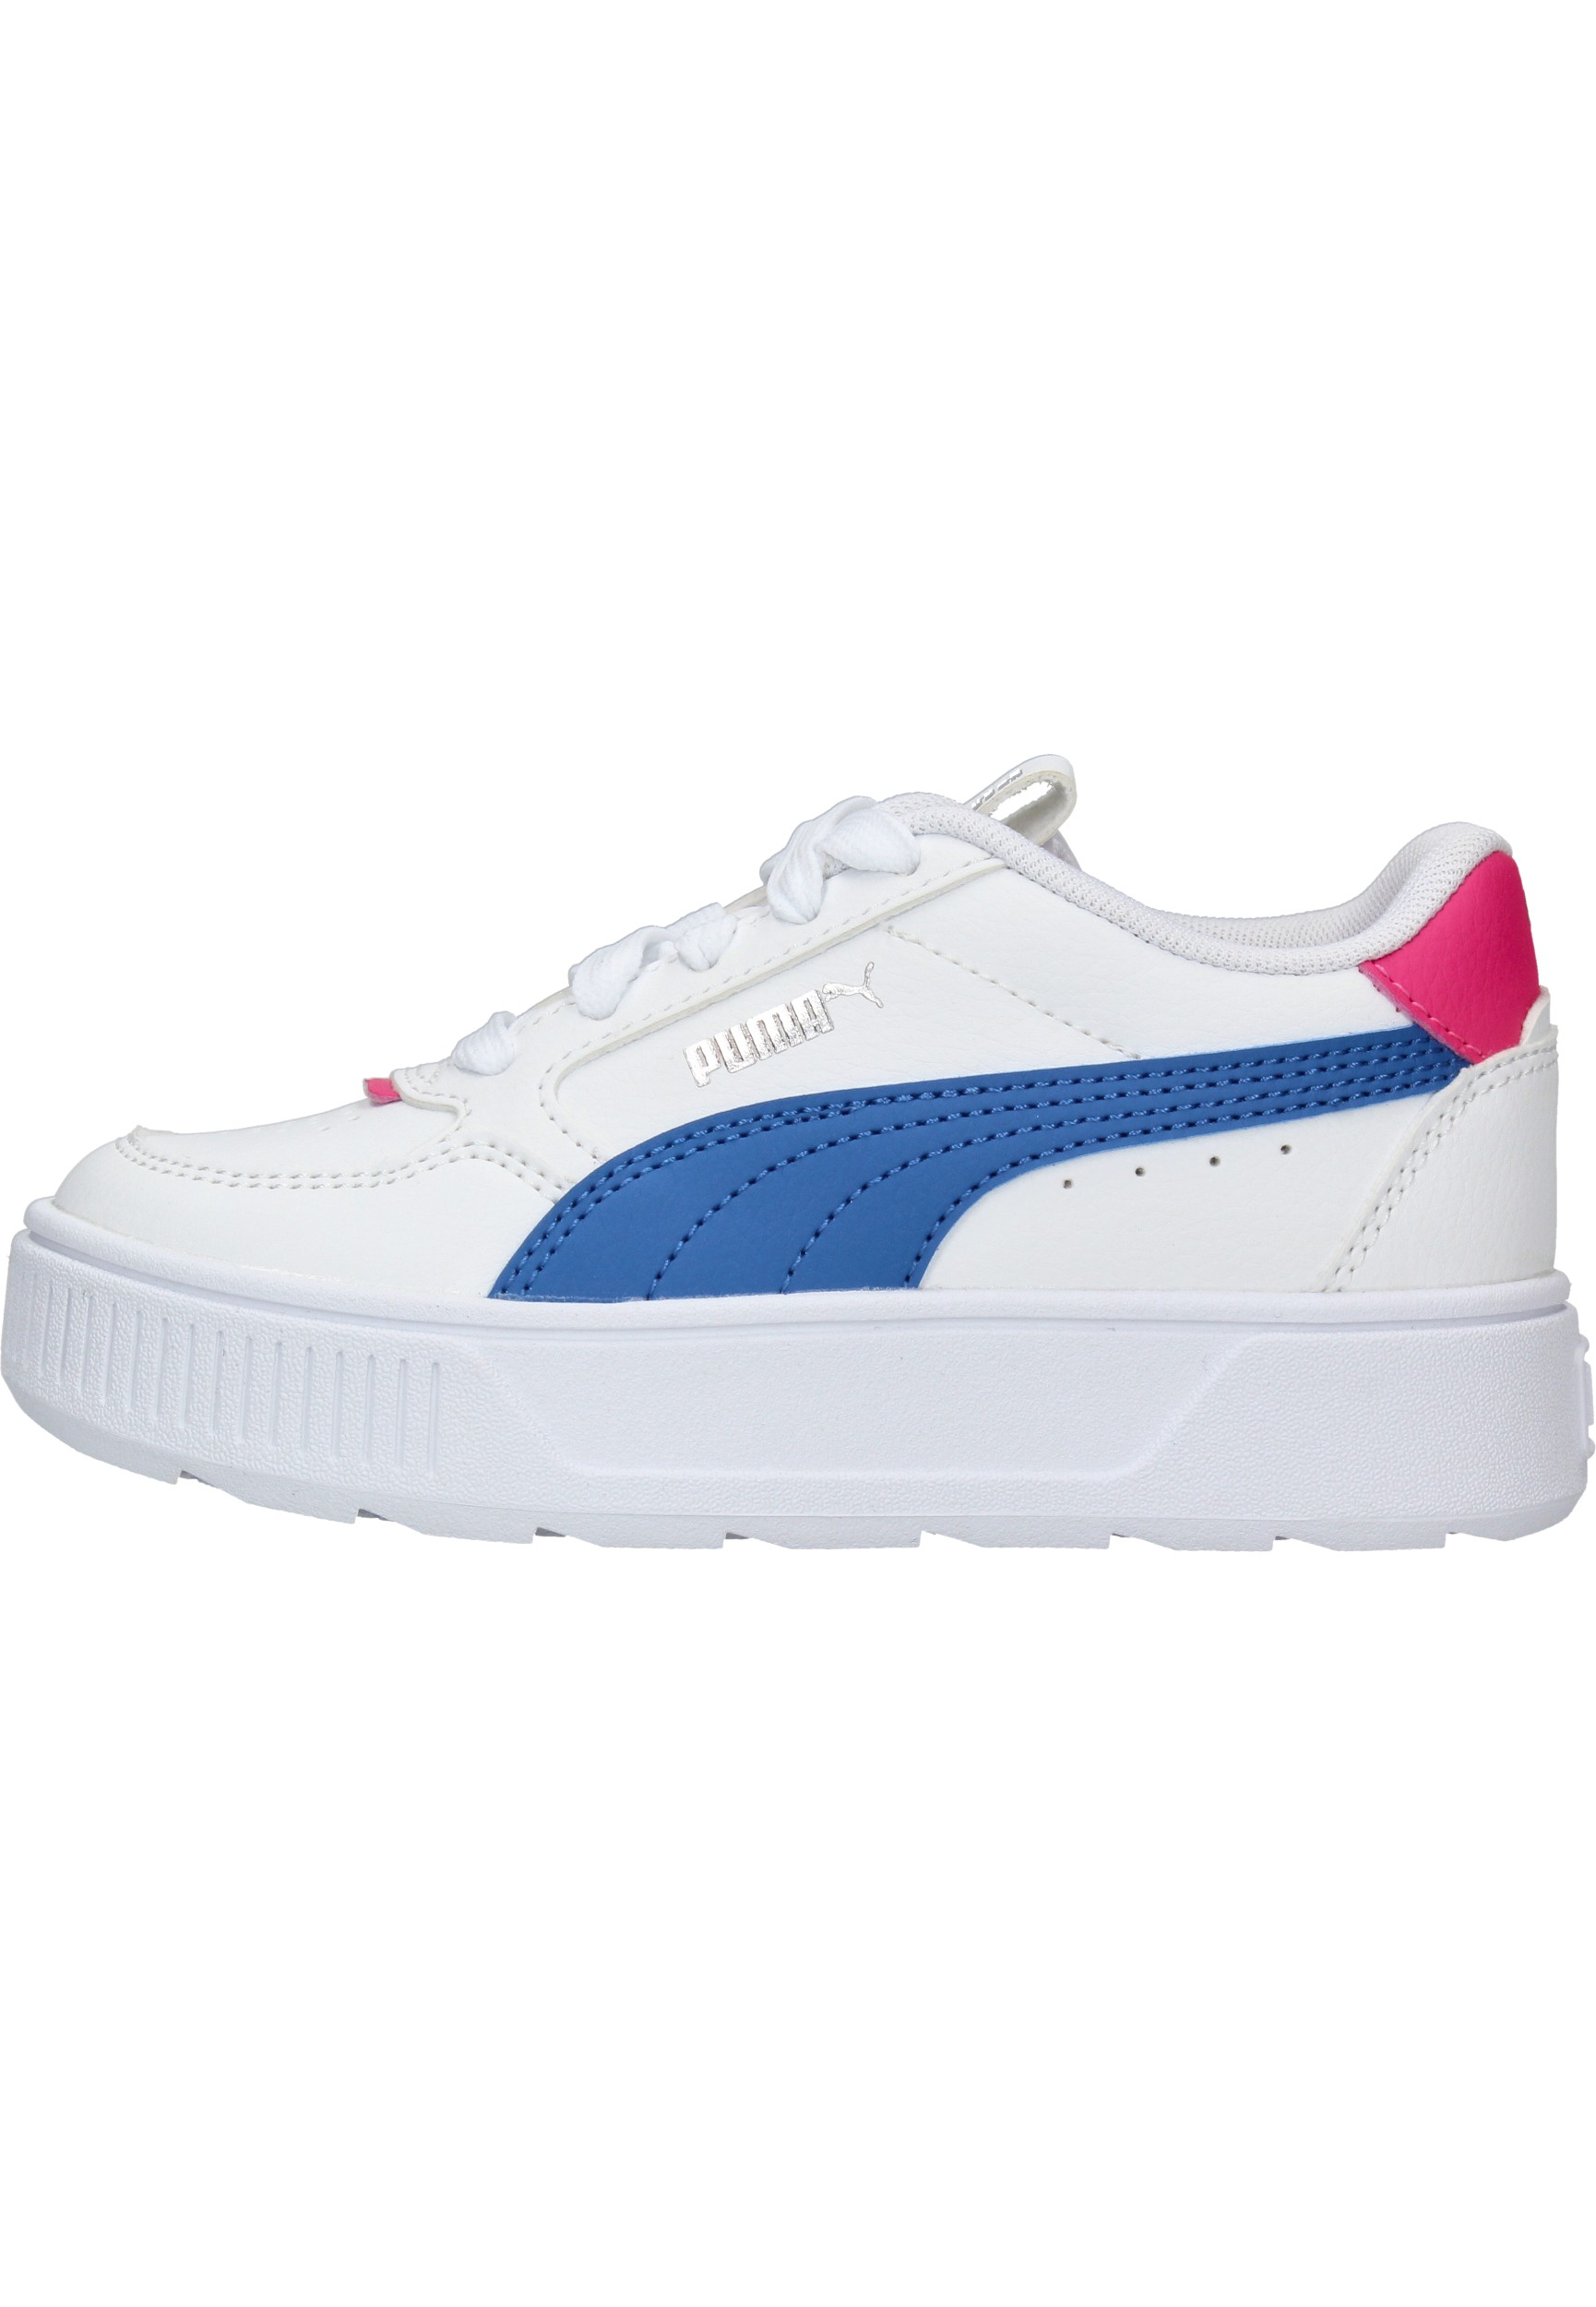 Puma Karmen Rebelle Sneaker Meisjes Wit/Blauw/Roze